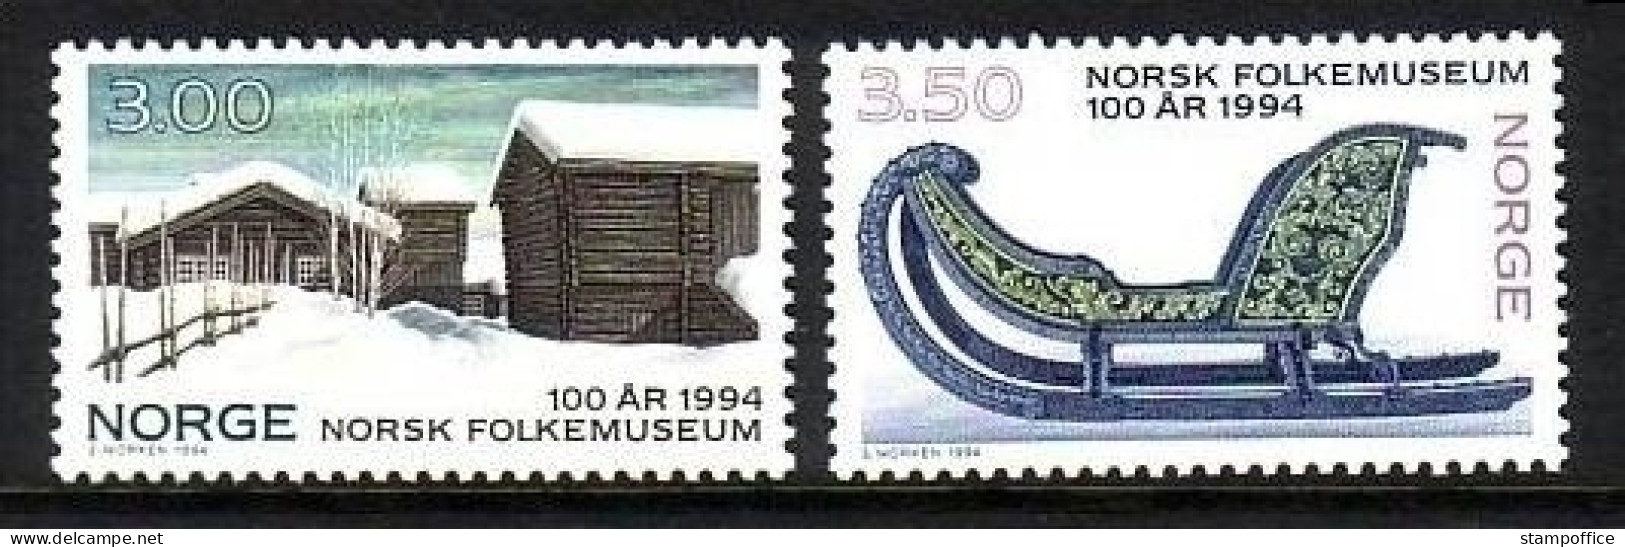 NORWEGEN MI-NR. 1161-1162 POSTFRISCH(MINT) FREILICHTMUSEUM - BAUERNHAUS, PFERDESCHLITTEN - Musées